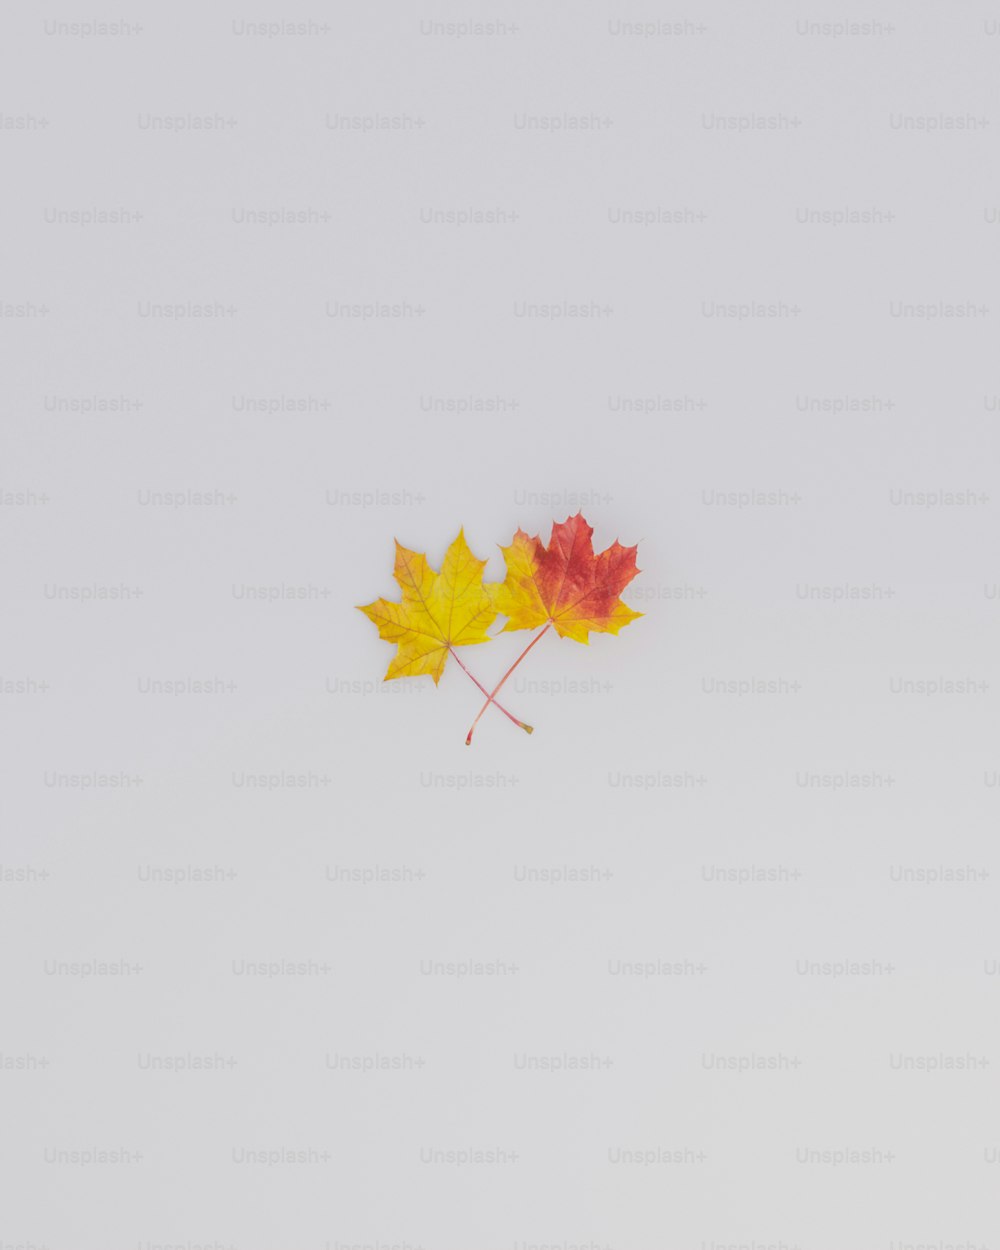 Un par de hojas de arce flotando en el aire